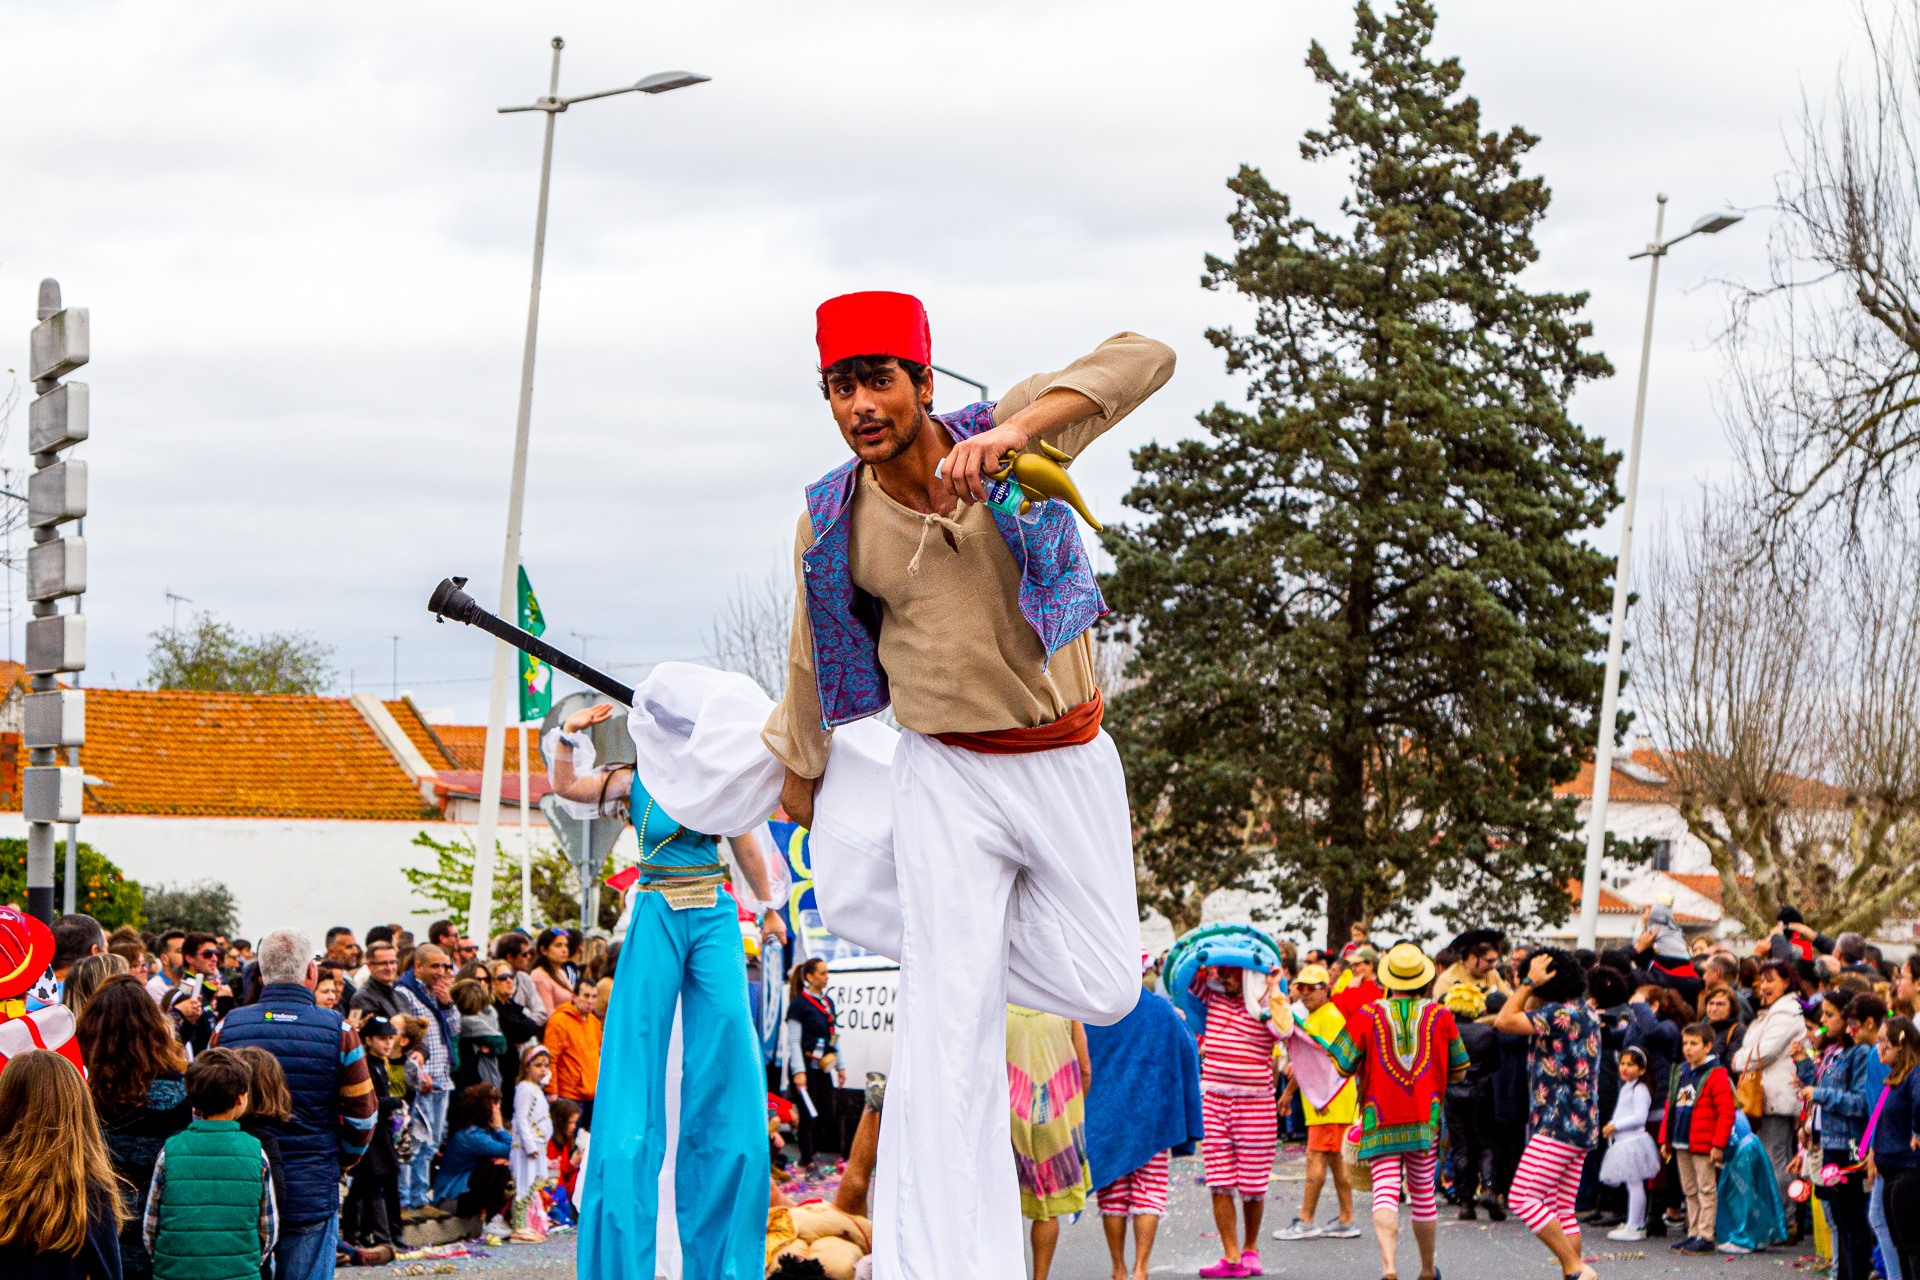 Vila alentejana de Cuba celebra Carnaval com 800 foliões